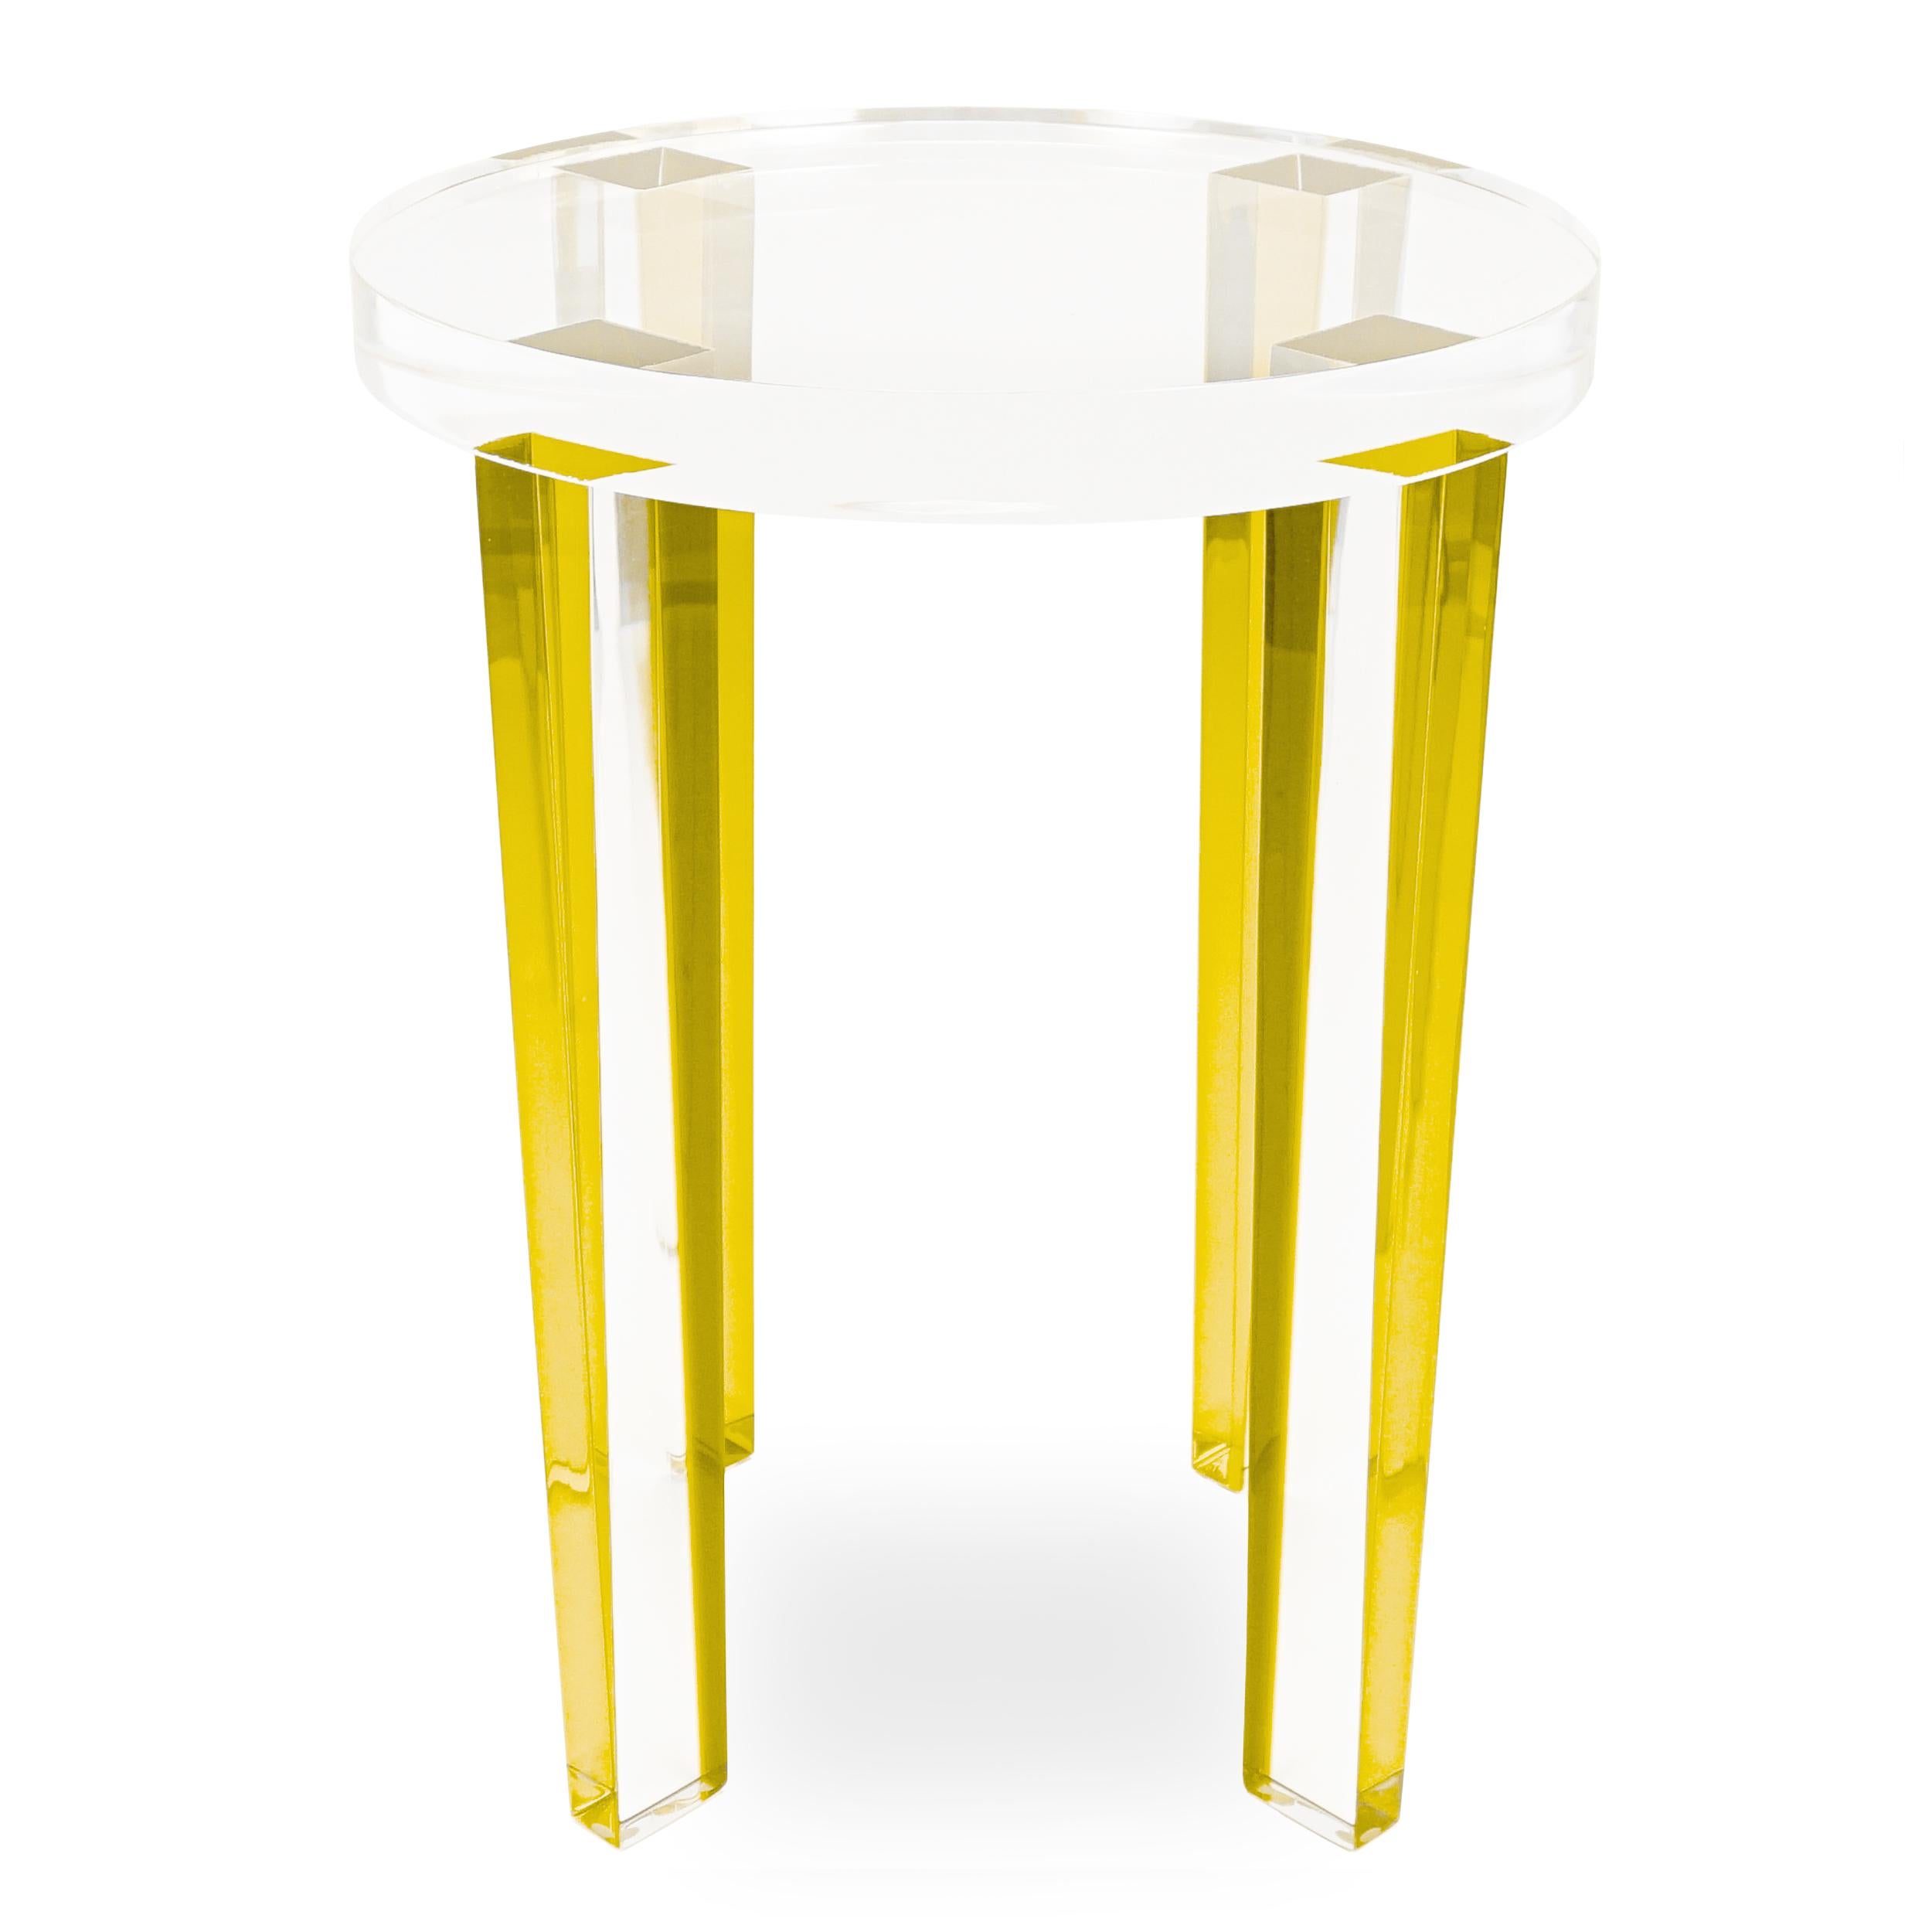 Dieser runde Beistelltisch aus Lucite wurde mit gelben Lucite-Beinen und einer klaren Lucite-Platte gebaut. Dieser kleine Beistelltisch reflektiert das Licht und sorgt für eine große Wirkung.

Gesamt: 15 